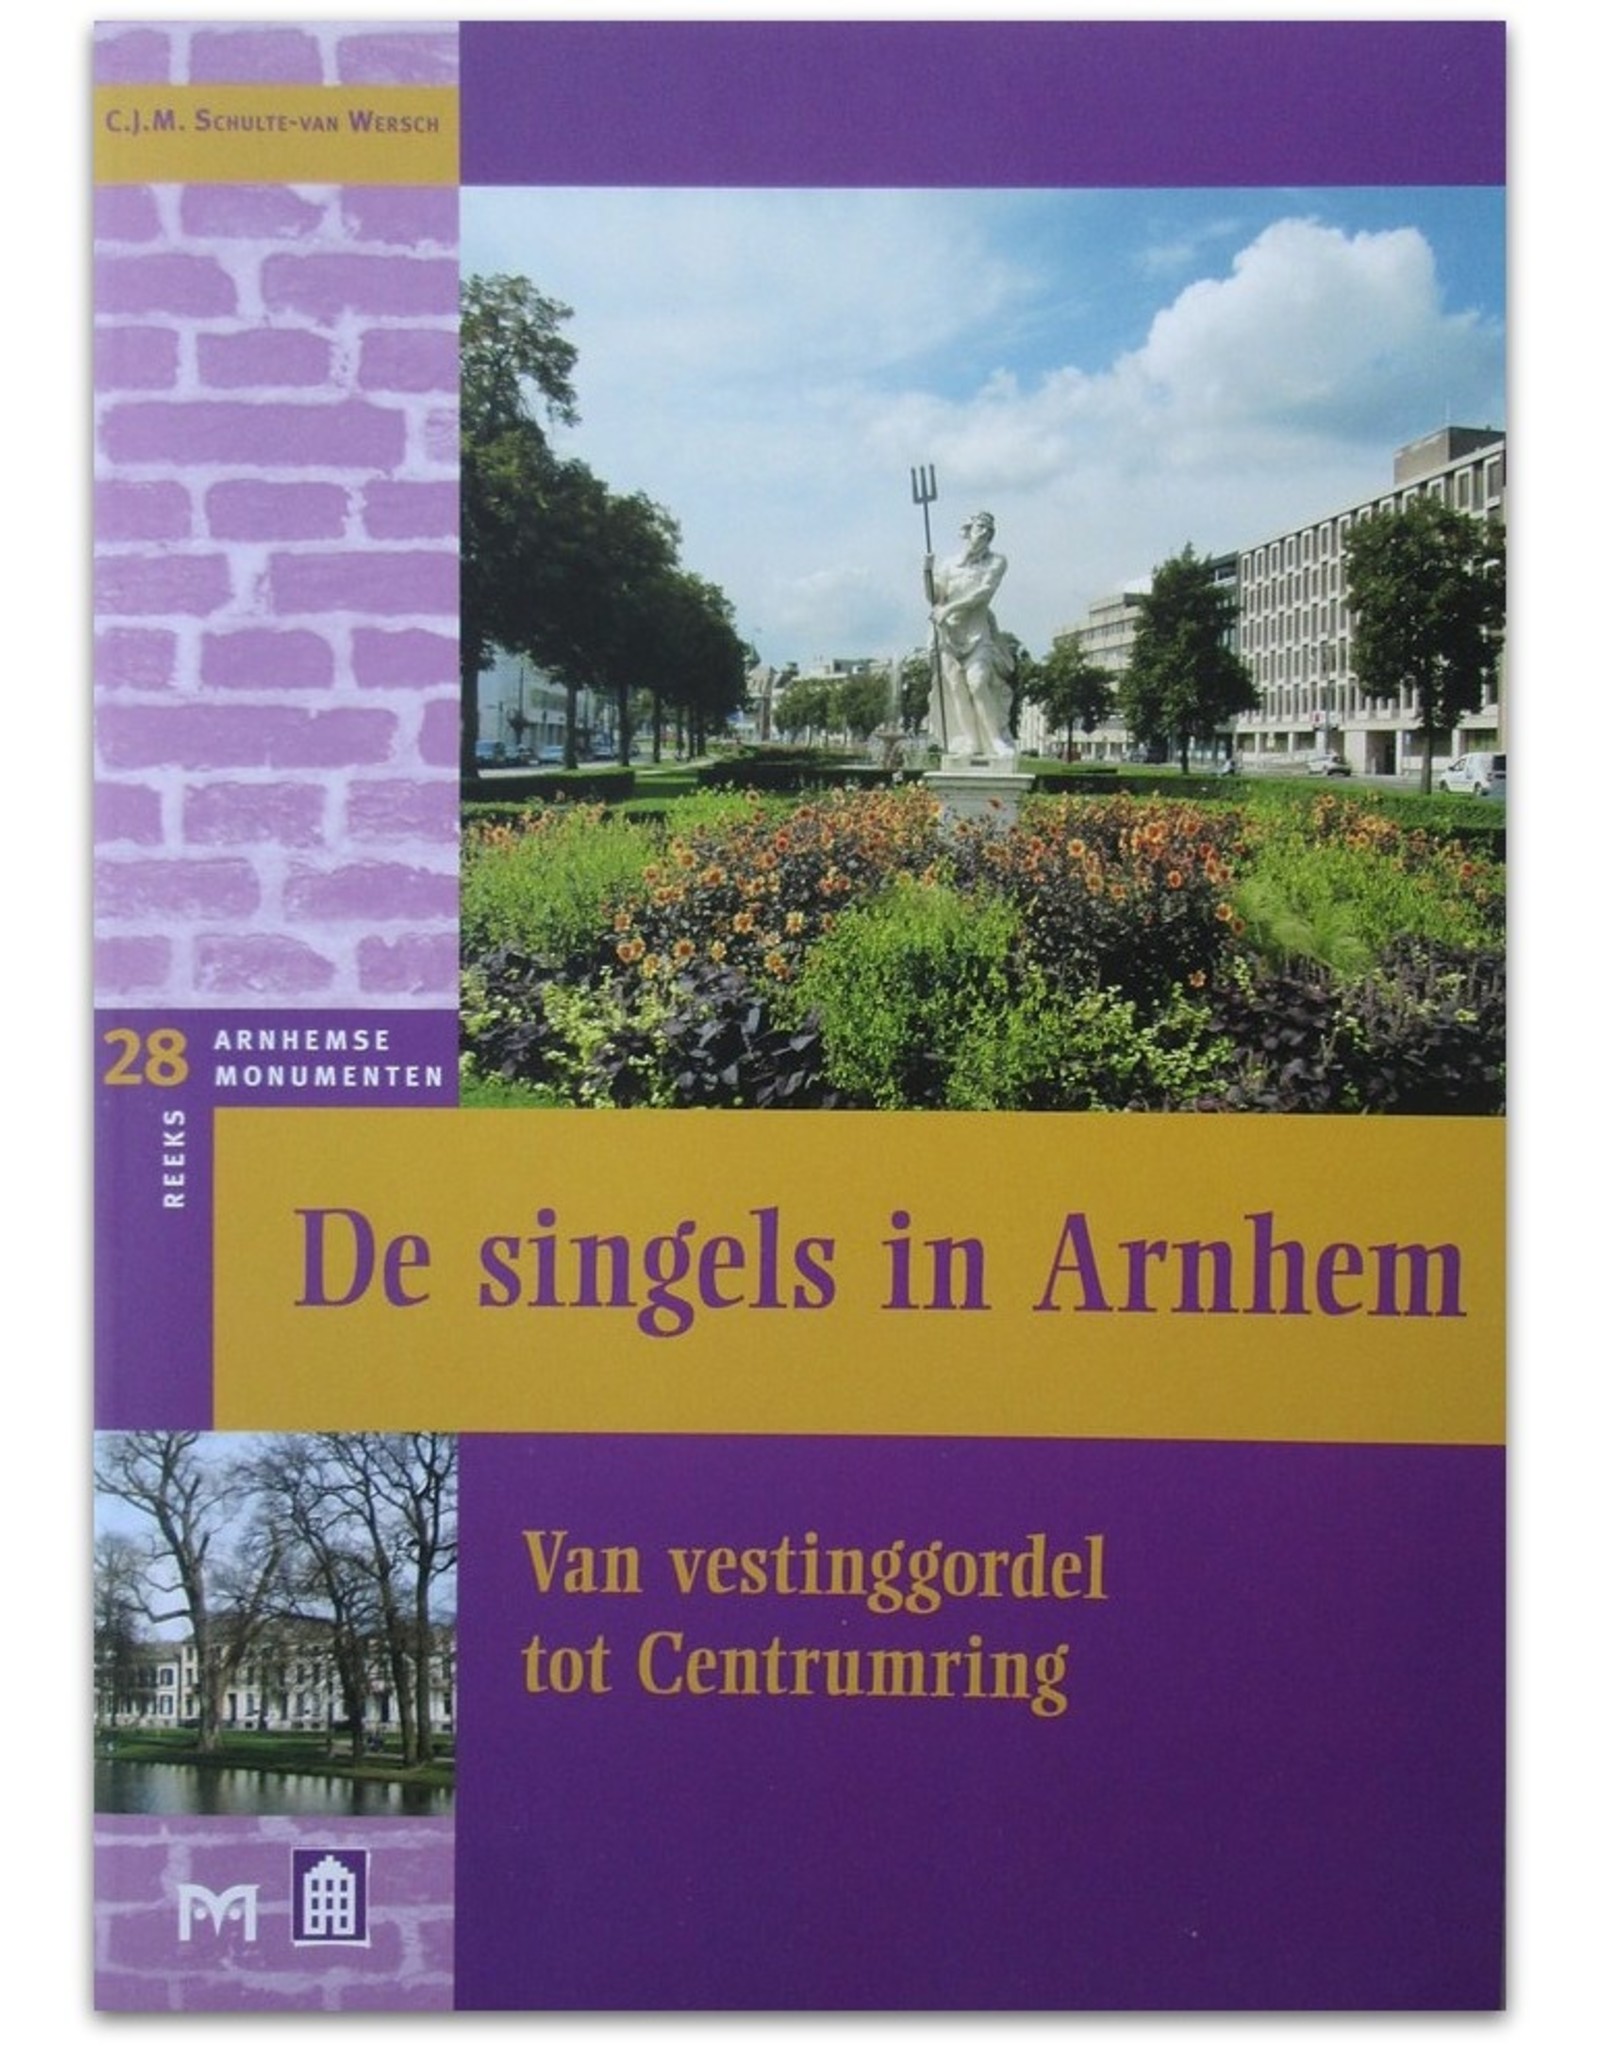 [Matrijs] C.J.M. Schulte-van Wersch - De singels in Arnhem. Van vestinggordel tot Centrumring